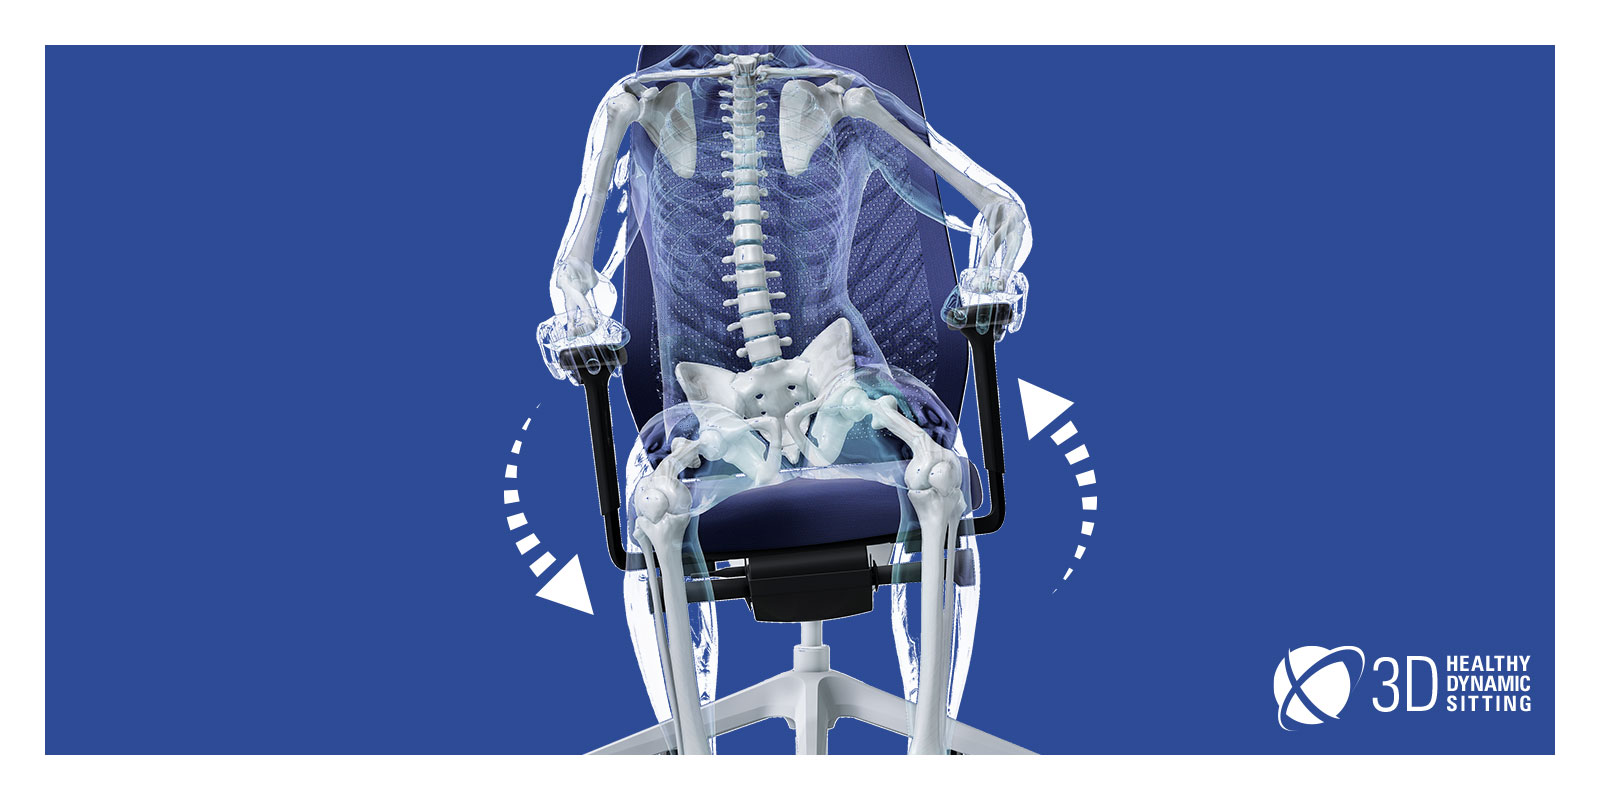 Glasmensch, dessen Skelett sichtbar ist, sitzt auf einem  JOYCE-Drehstuhl mit schwarzem Netzrücken, blauem Sitzbezug, schwarzen T-Armlehnen, und Kunststoffteilen (u.a. Fußkreuz, Säulenfunktion) sowie FlexTech in Weiß. Der Glasmensch verlagert sein Gewicht auf die rechte Seite, weshalb sich der Stuhl an seine Bewegungen anpasst. Um den Stuhl herum bilden zwei weiße Pfeile einen Kreis, was die Beweglichkeit des Stuhls betont. Das aktive Sitzen wird von der FlexTech-Funktion gefördert.